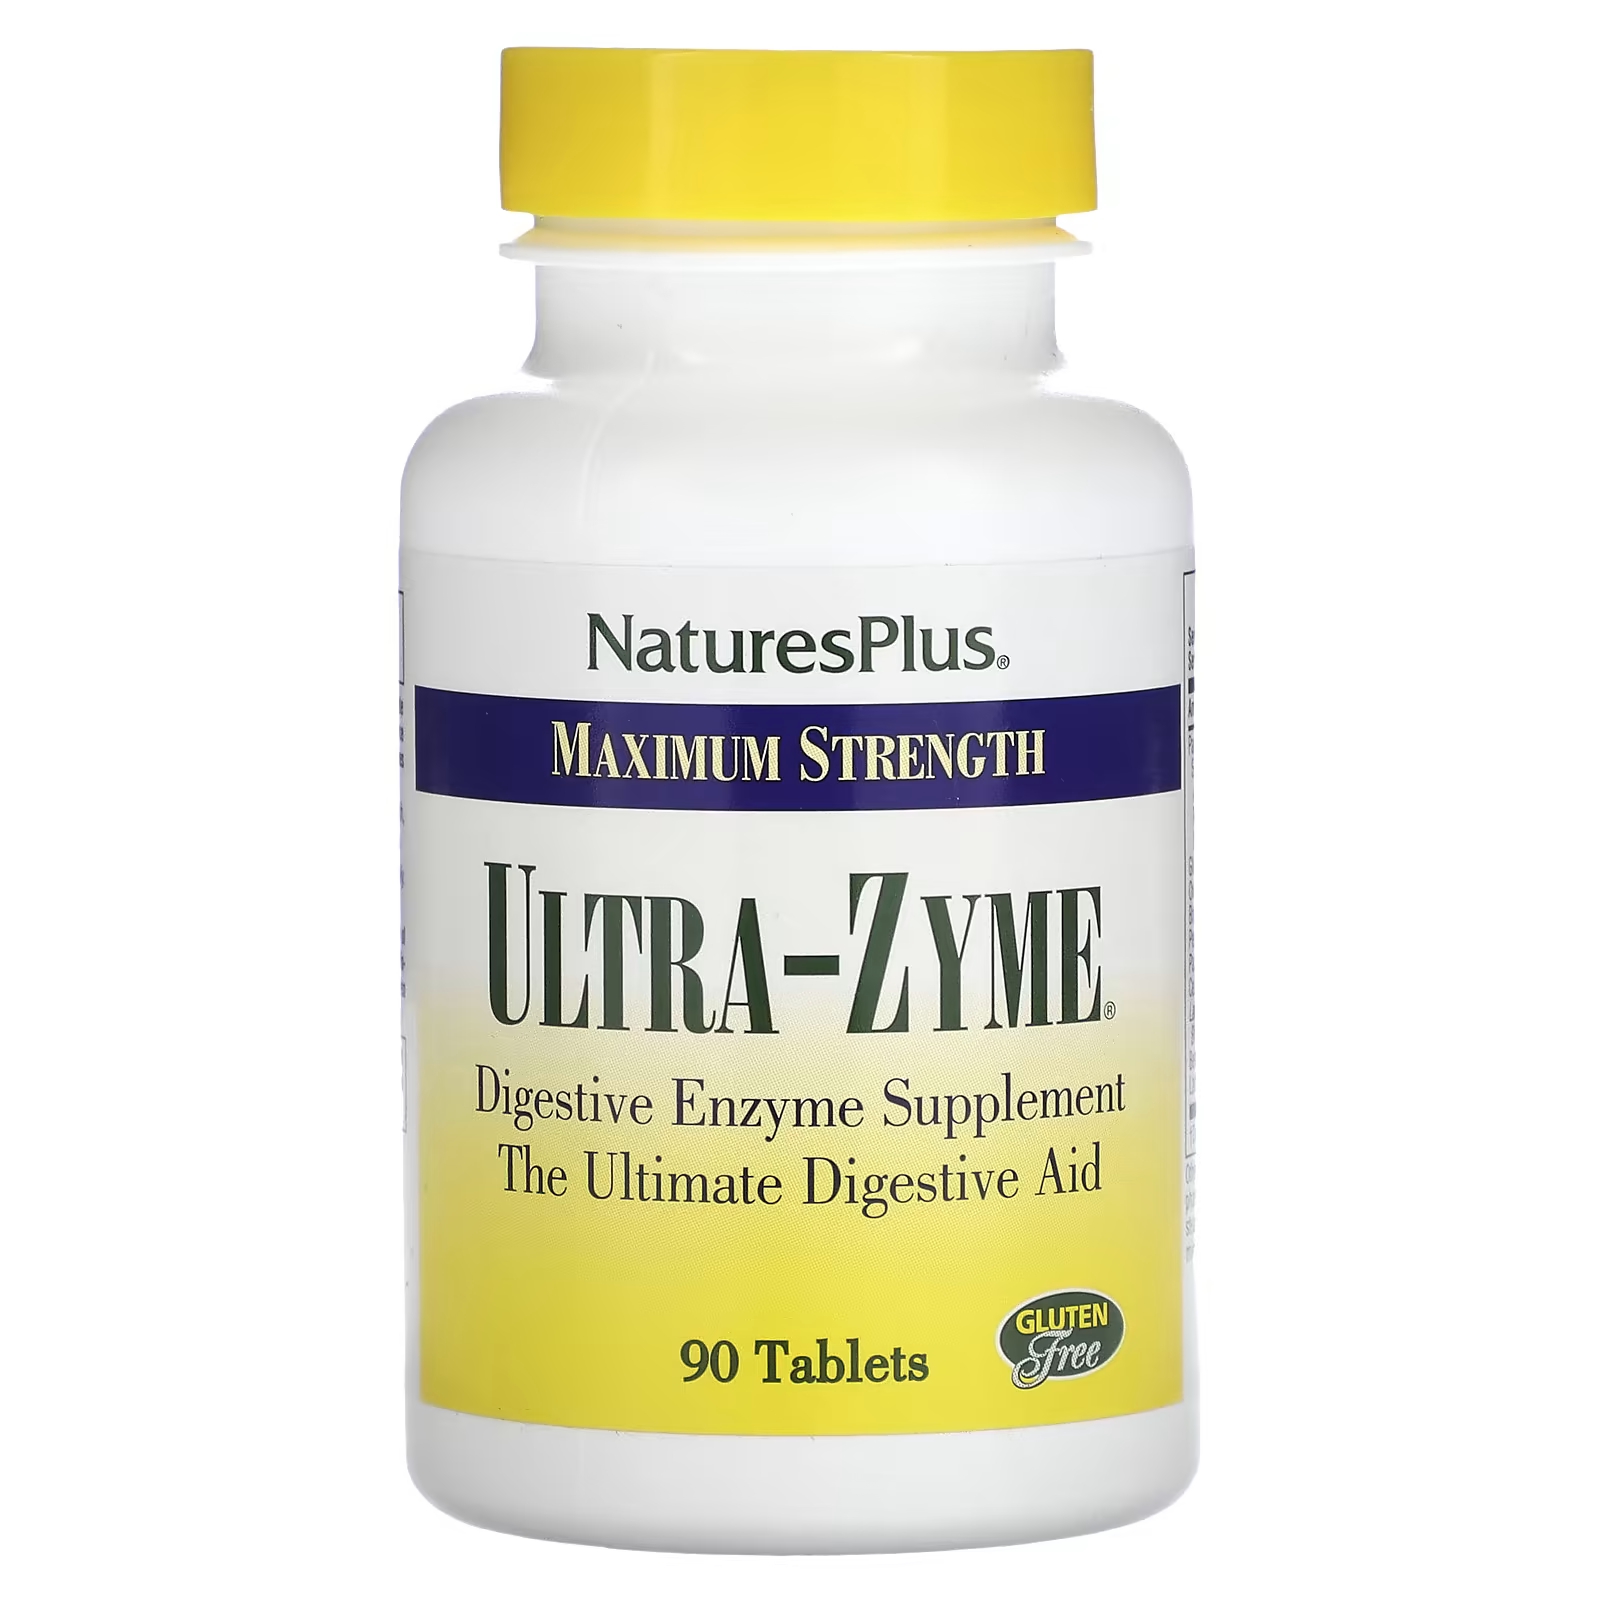 Пищевая добавка NaturesPlus Максимальная сила Ultra-Zyme, 90 таблеток пищевая добавка ultra garlite naturesplus пролонгированного действия 90 таблеток